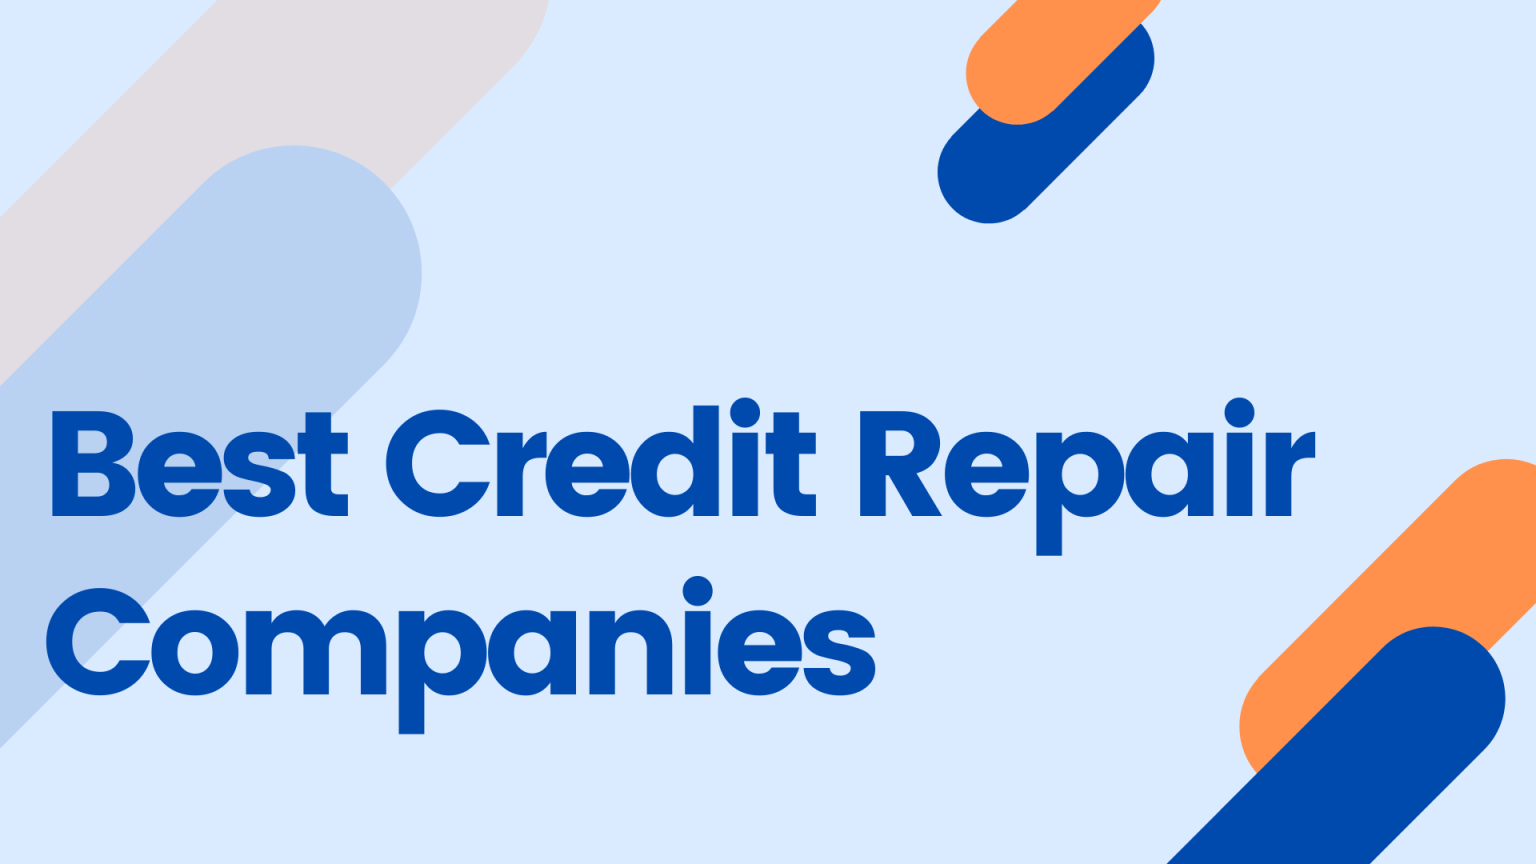 7 Best Credit Repair Companies Of 2021